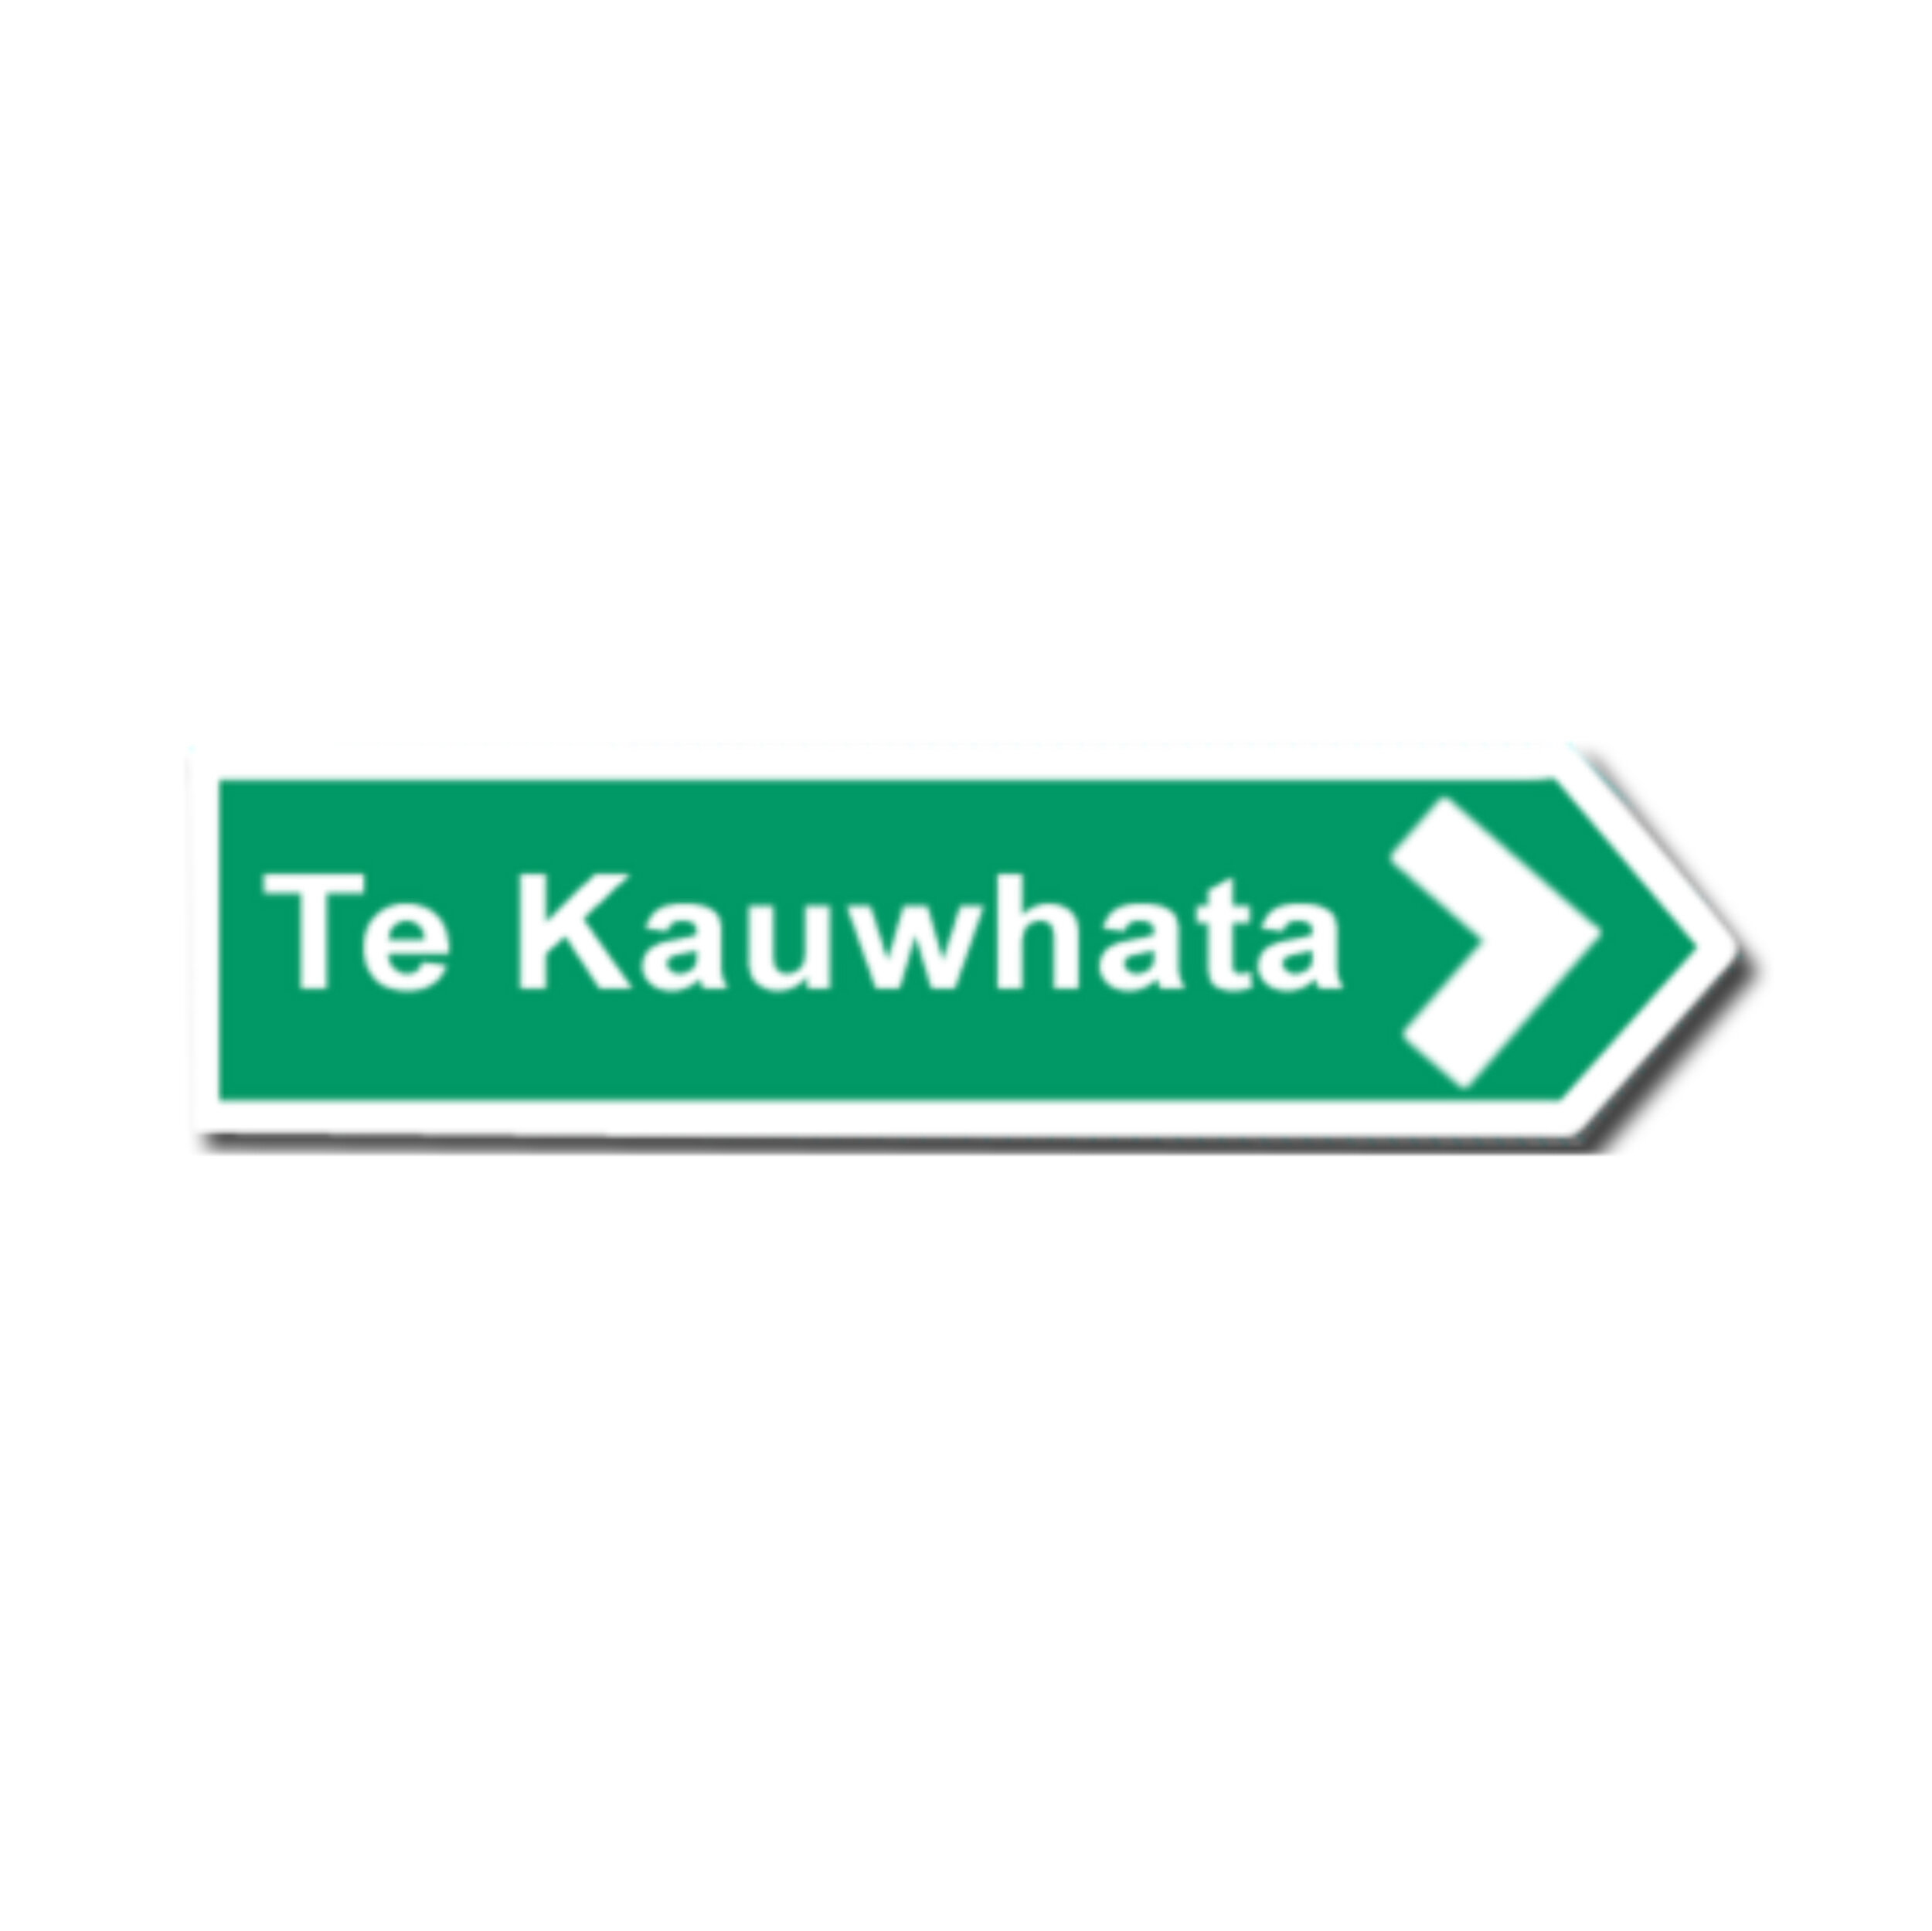 Te Kauwhata